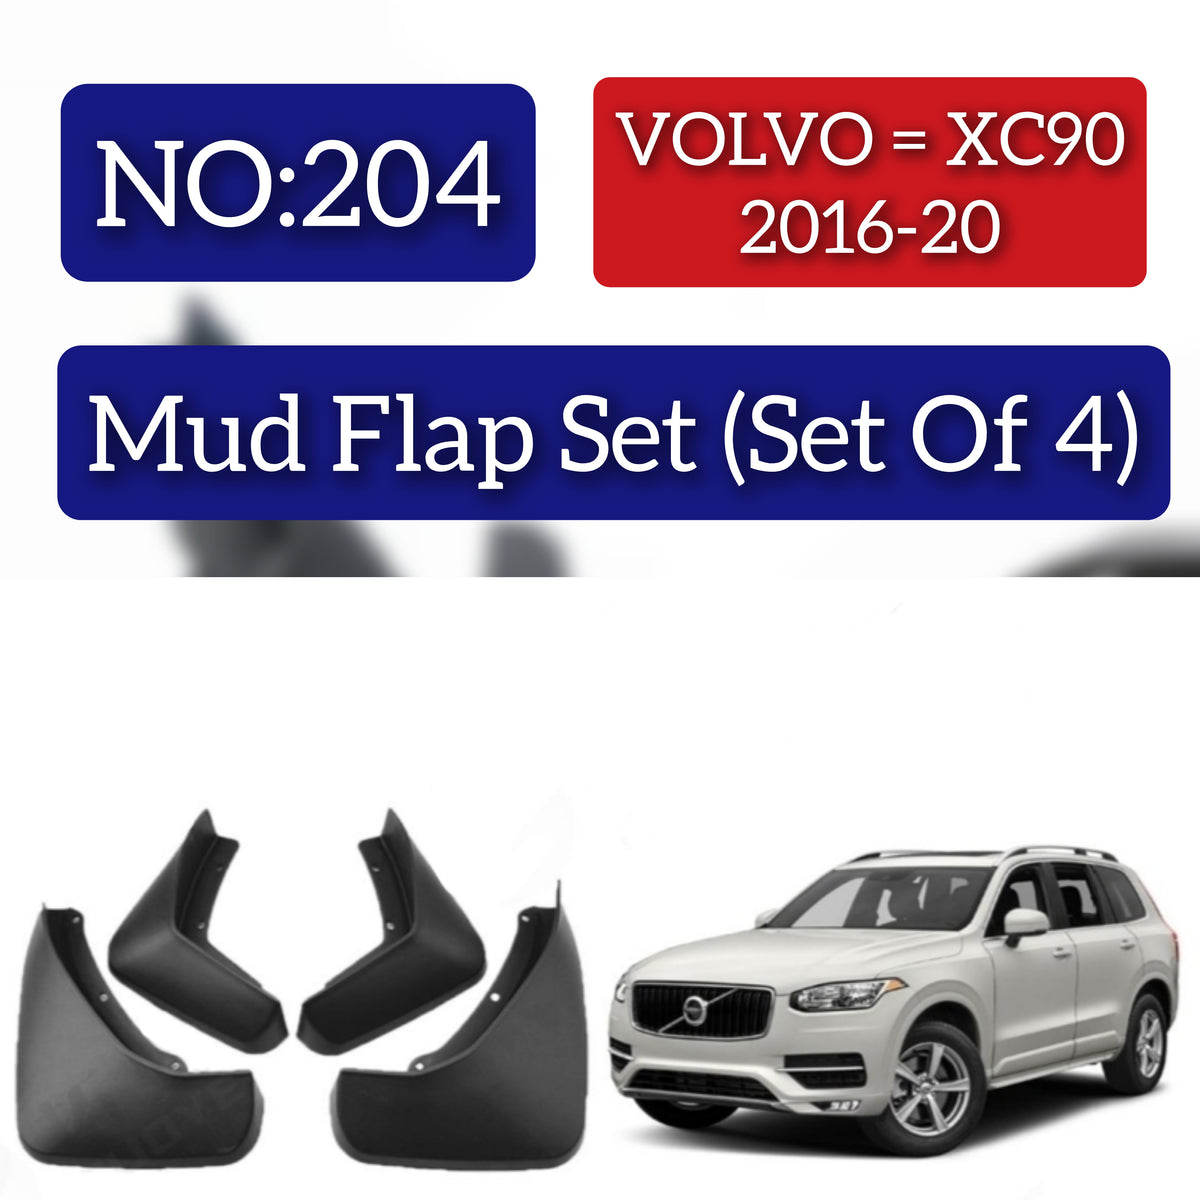 Volvo XC90 2016-20 Mud Flap Set (Set of 4) Tag 204